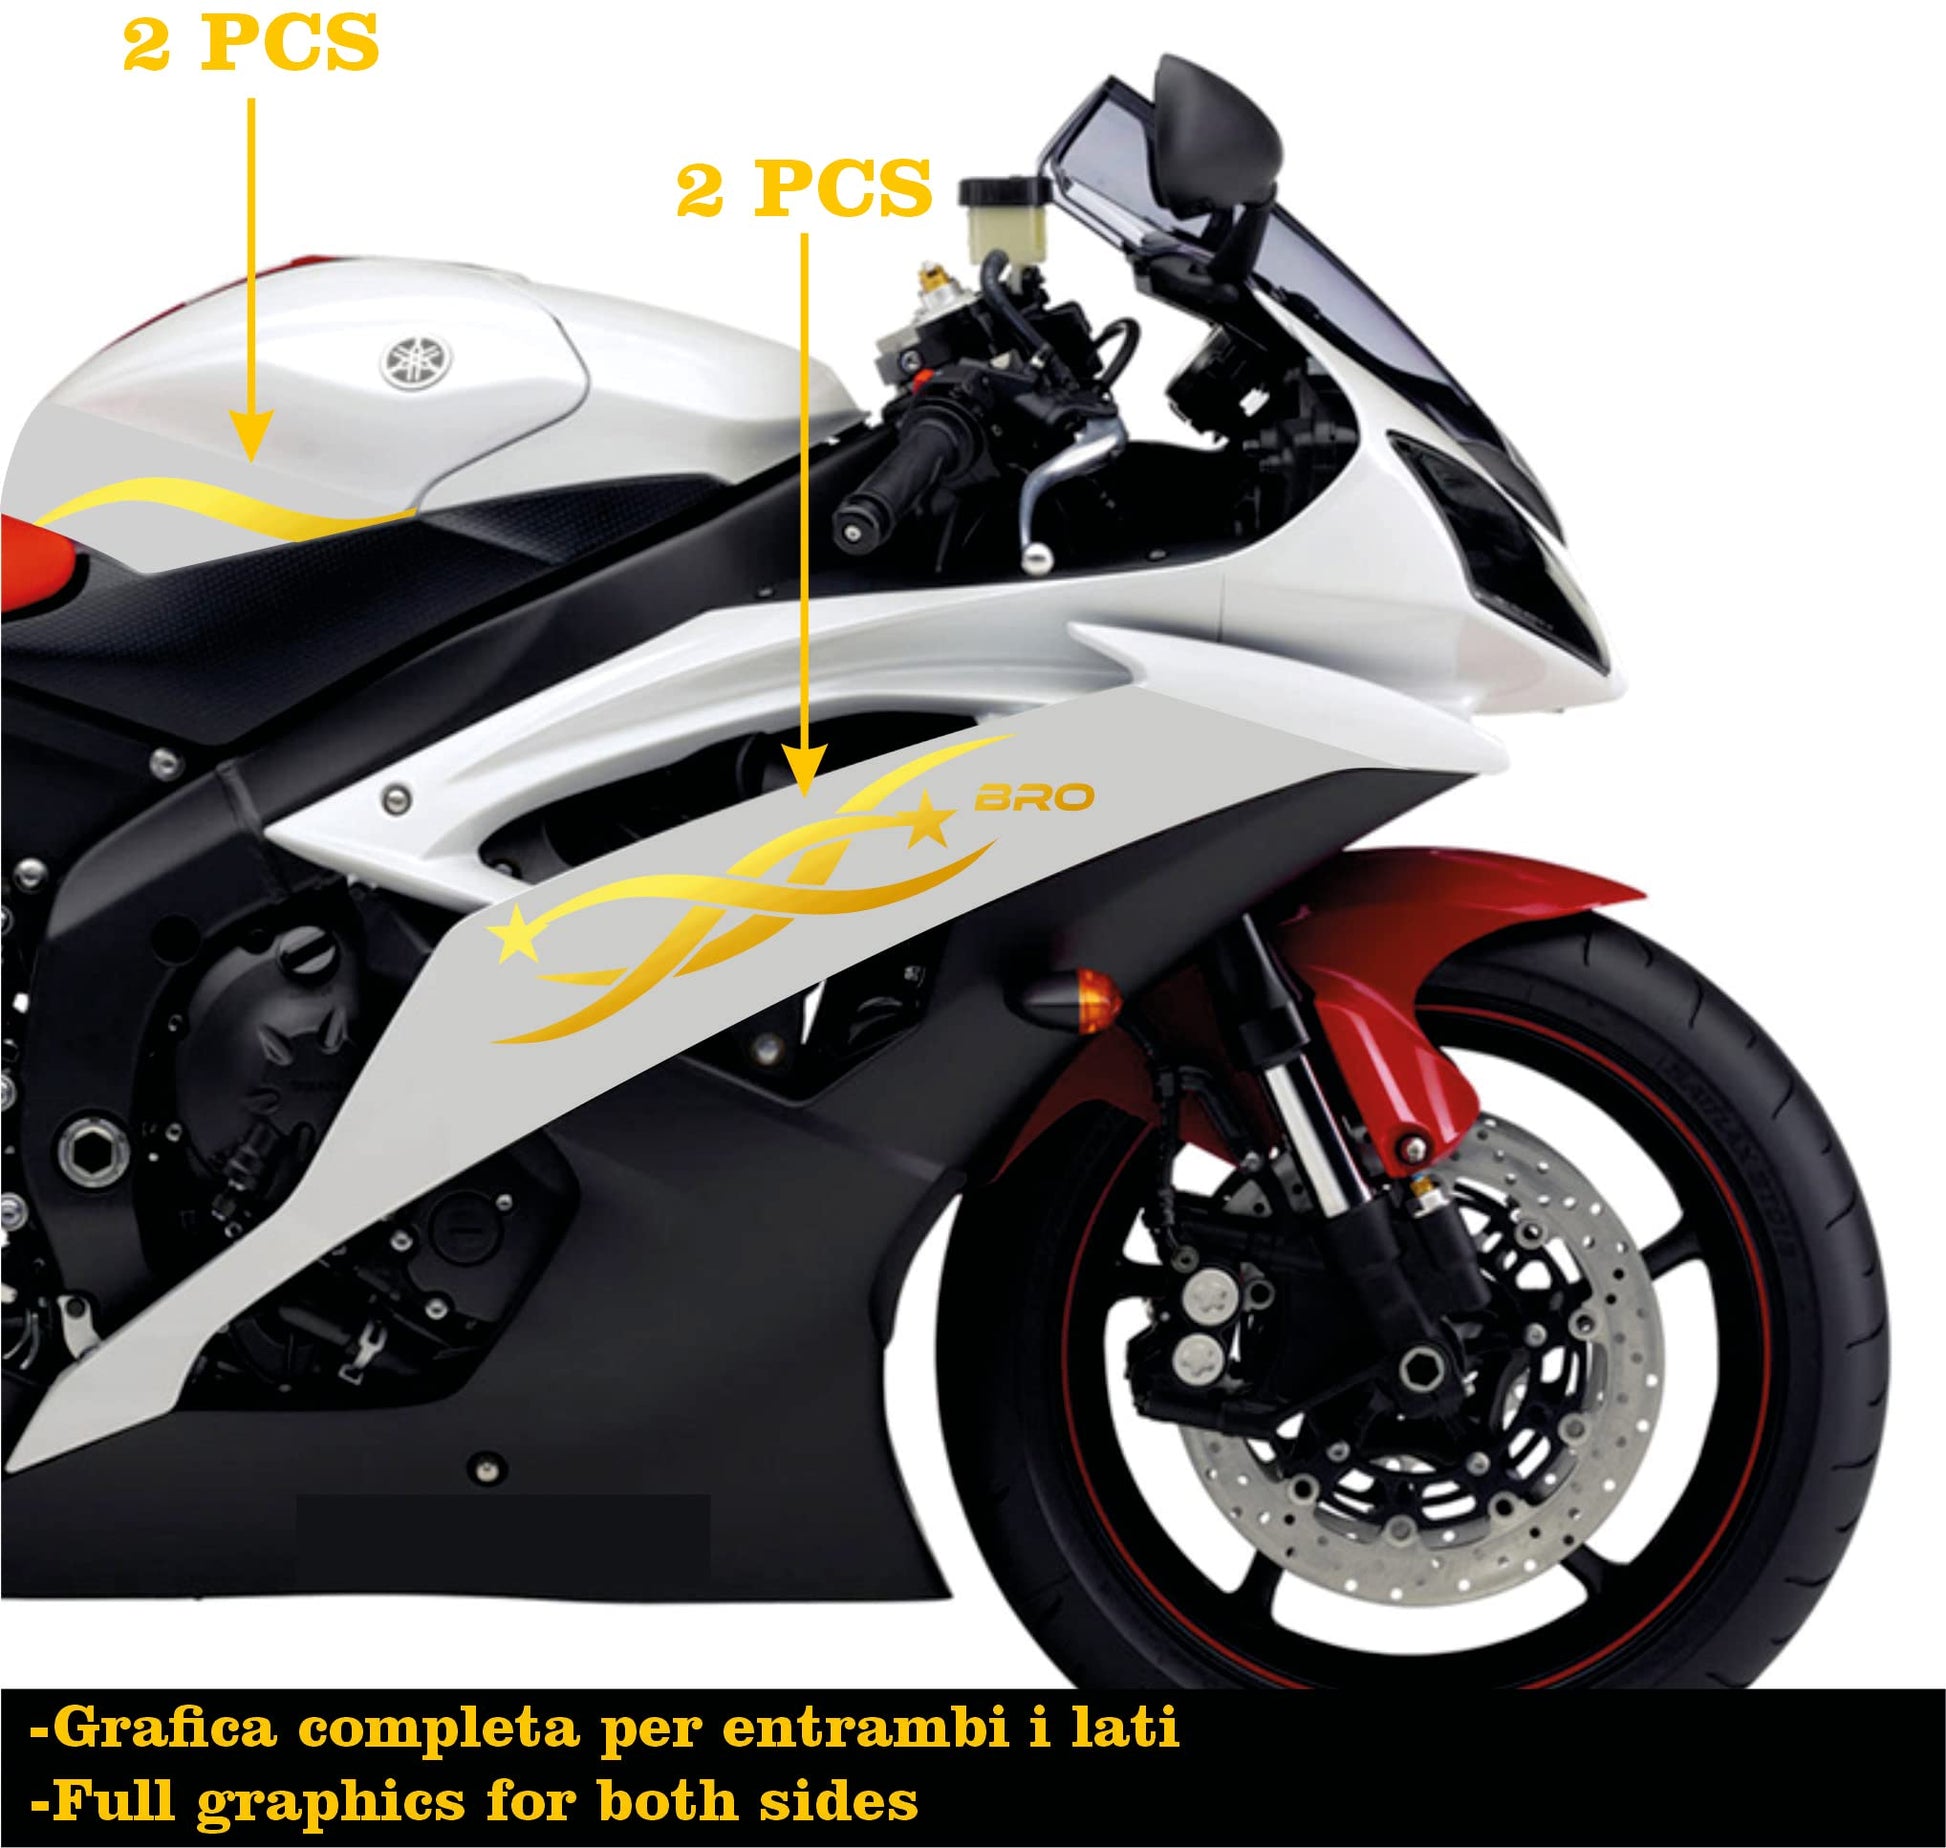 DualColorStampe Adesivi Compatibili con Yamaha R6 ANNO 2008 carena moto accessori stickers Motociclo colore a scelta BRO COD.M0280 a €34.99 solo da DualColorStampe